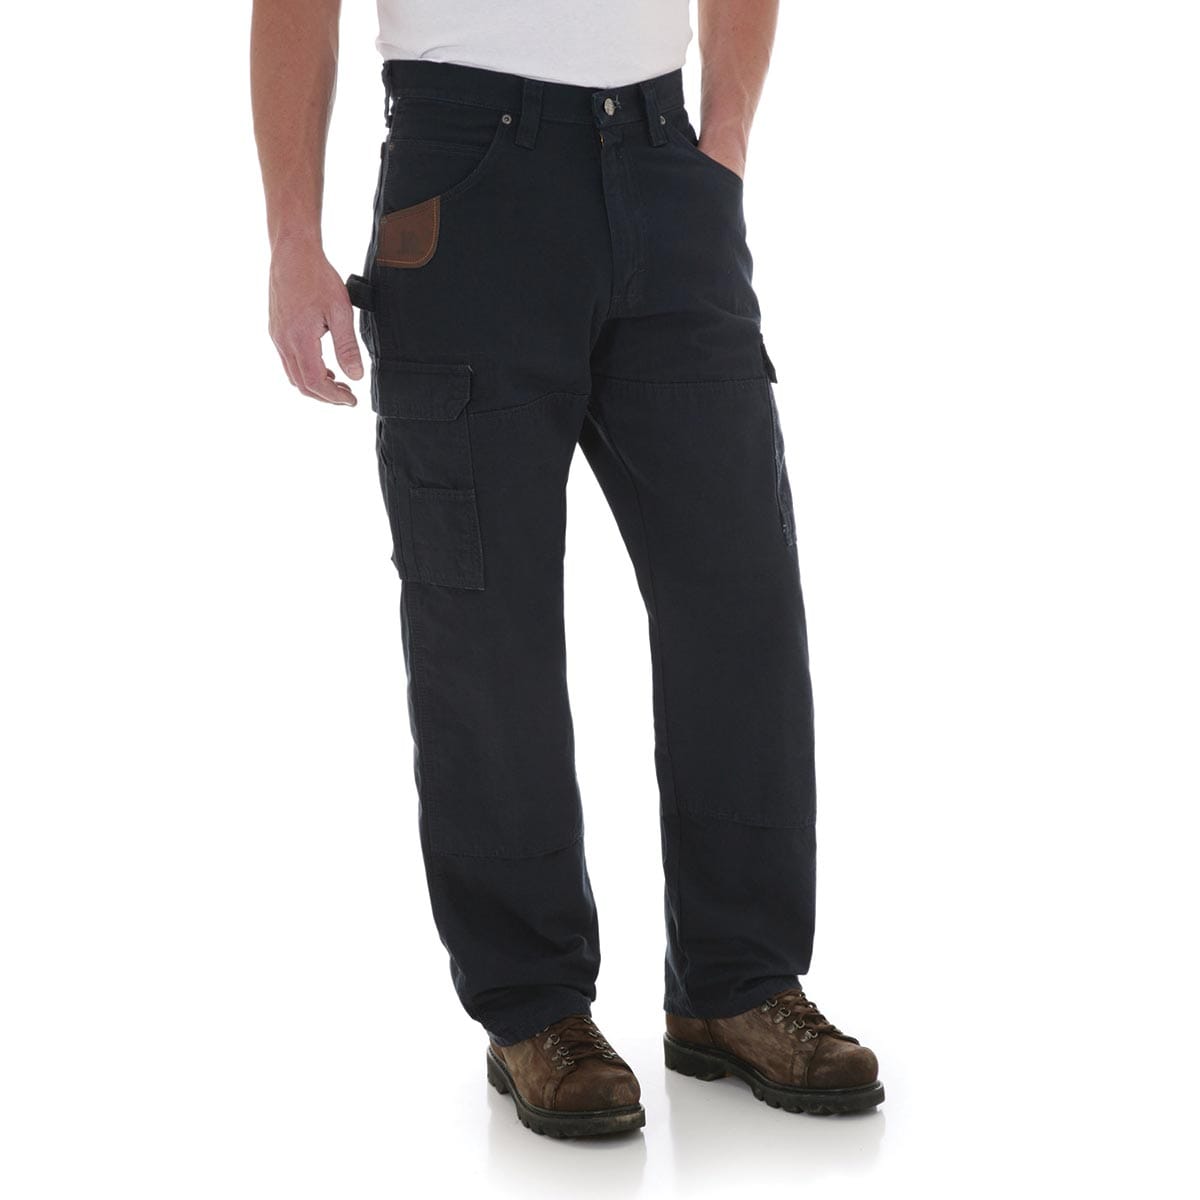 Wrangler RIGGS Workwear Ripstop Ranger Pants for Men